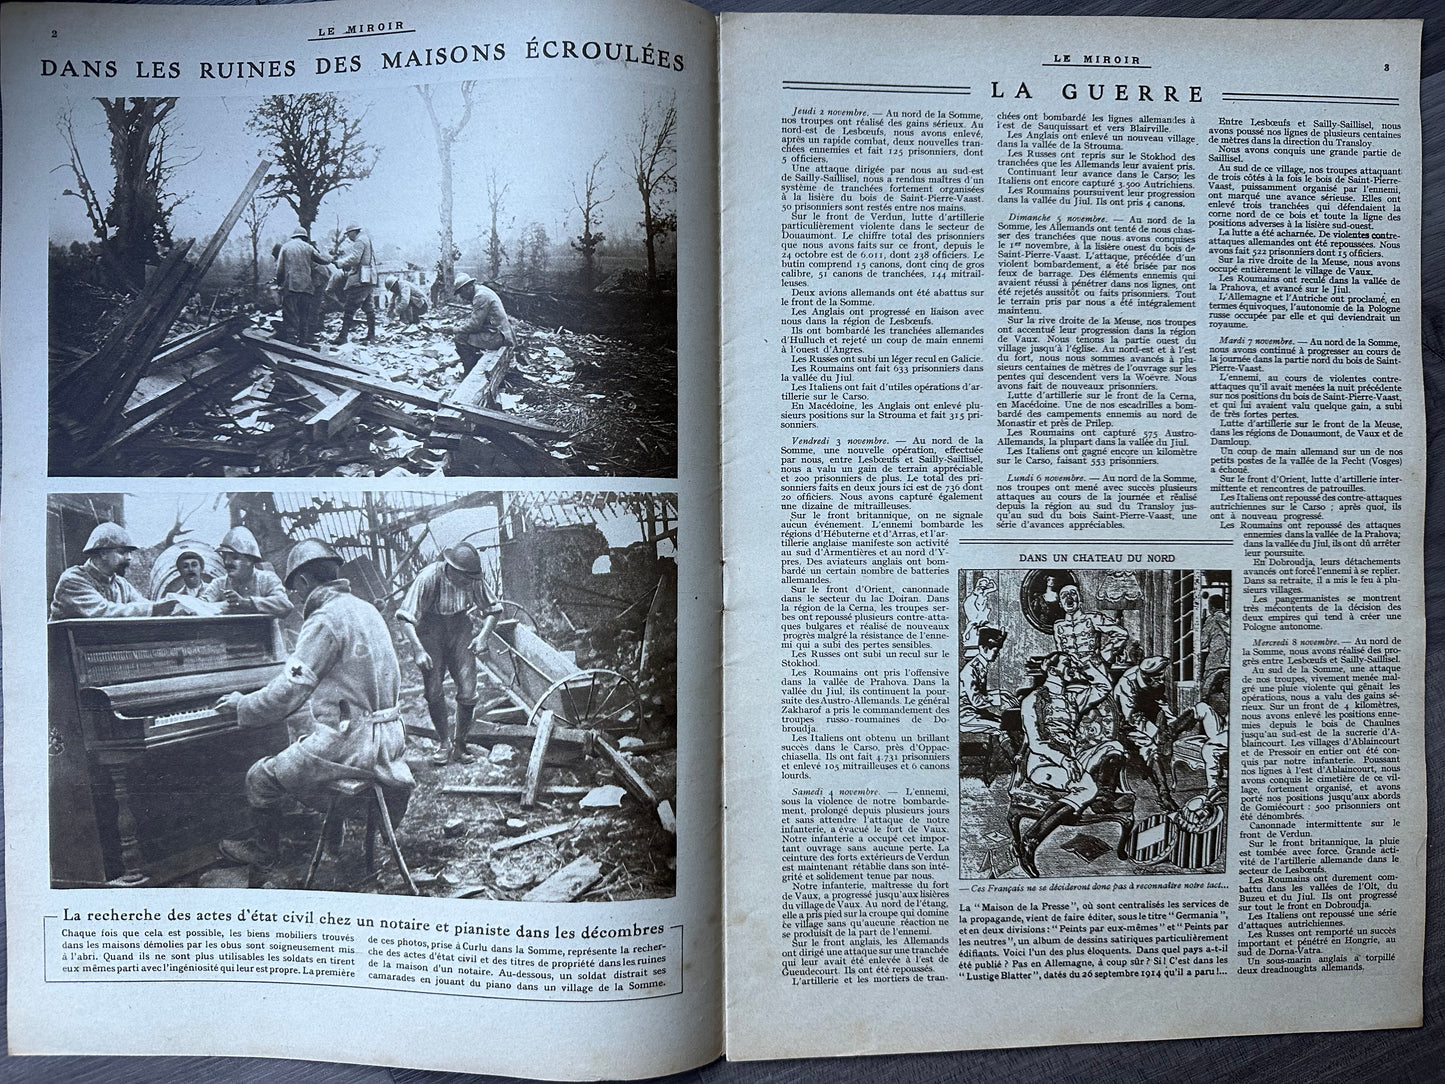 1916 Issue "Le Miroir" - Violin